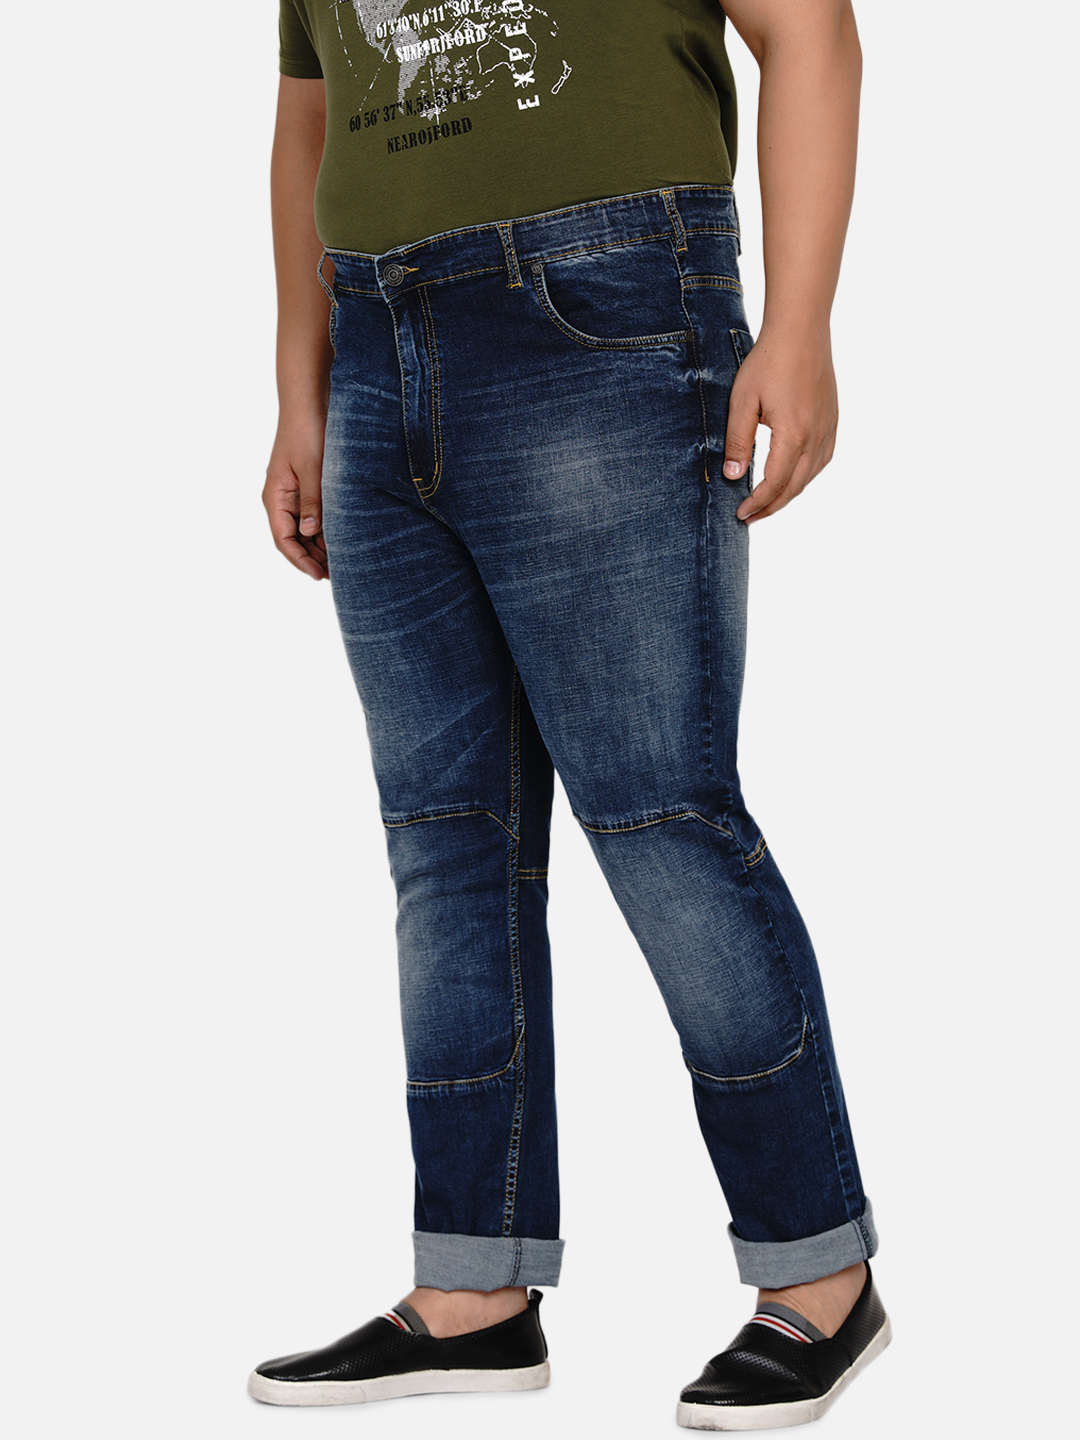 bottomwear/jeans/JPJ12186/jpj12186-4.jpg